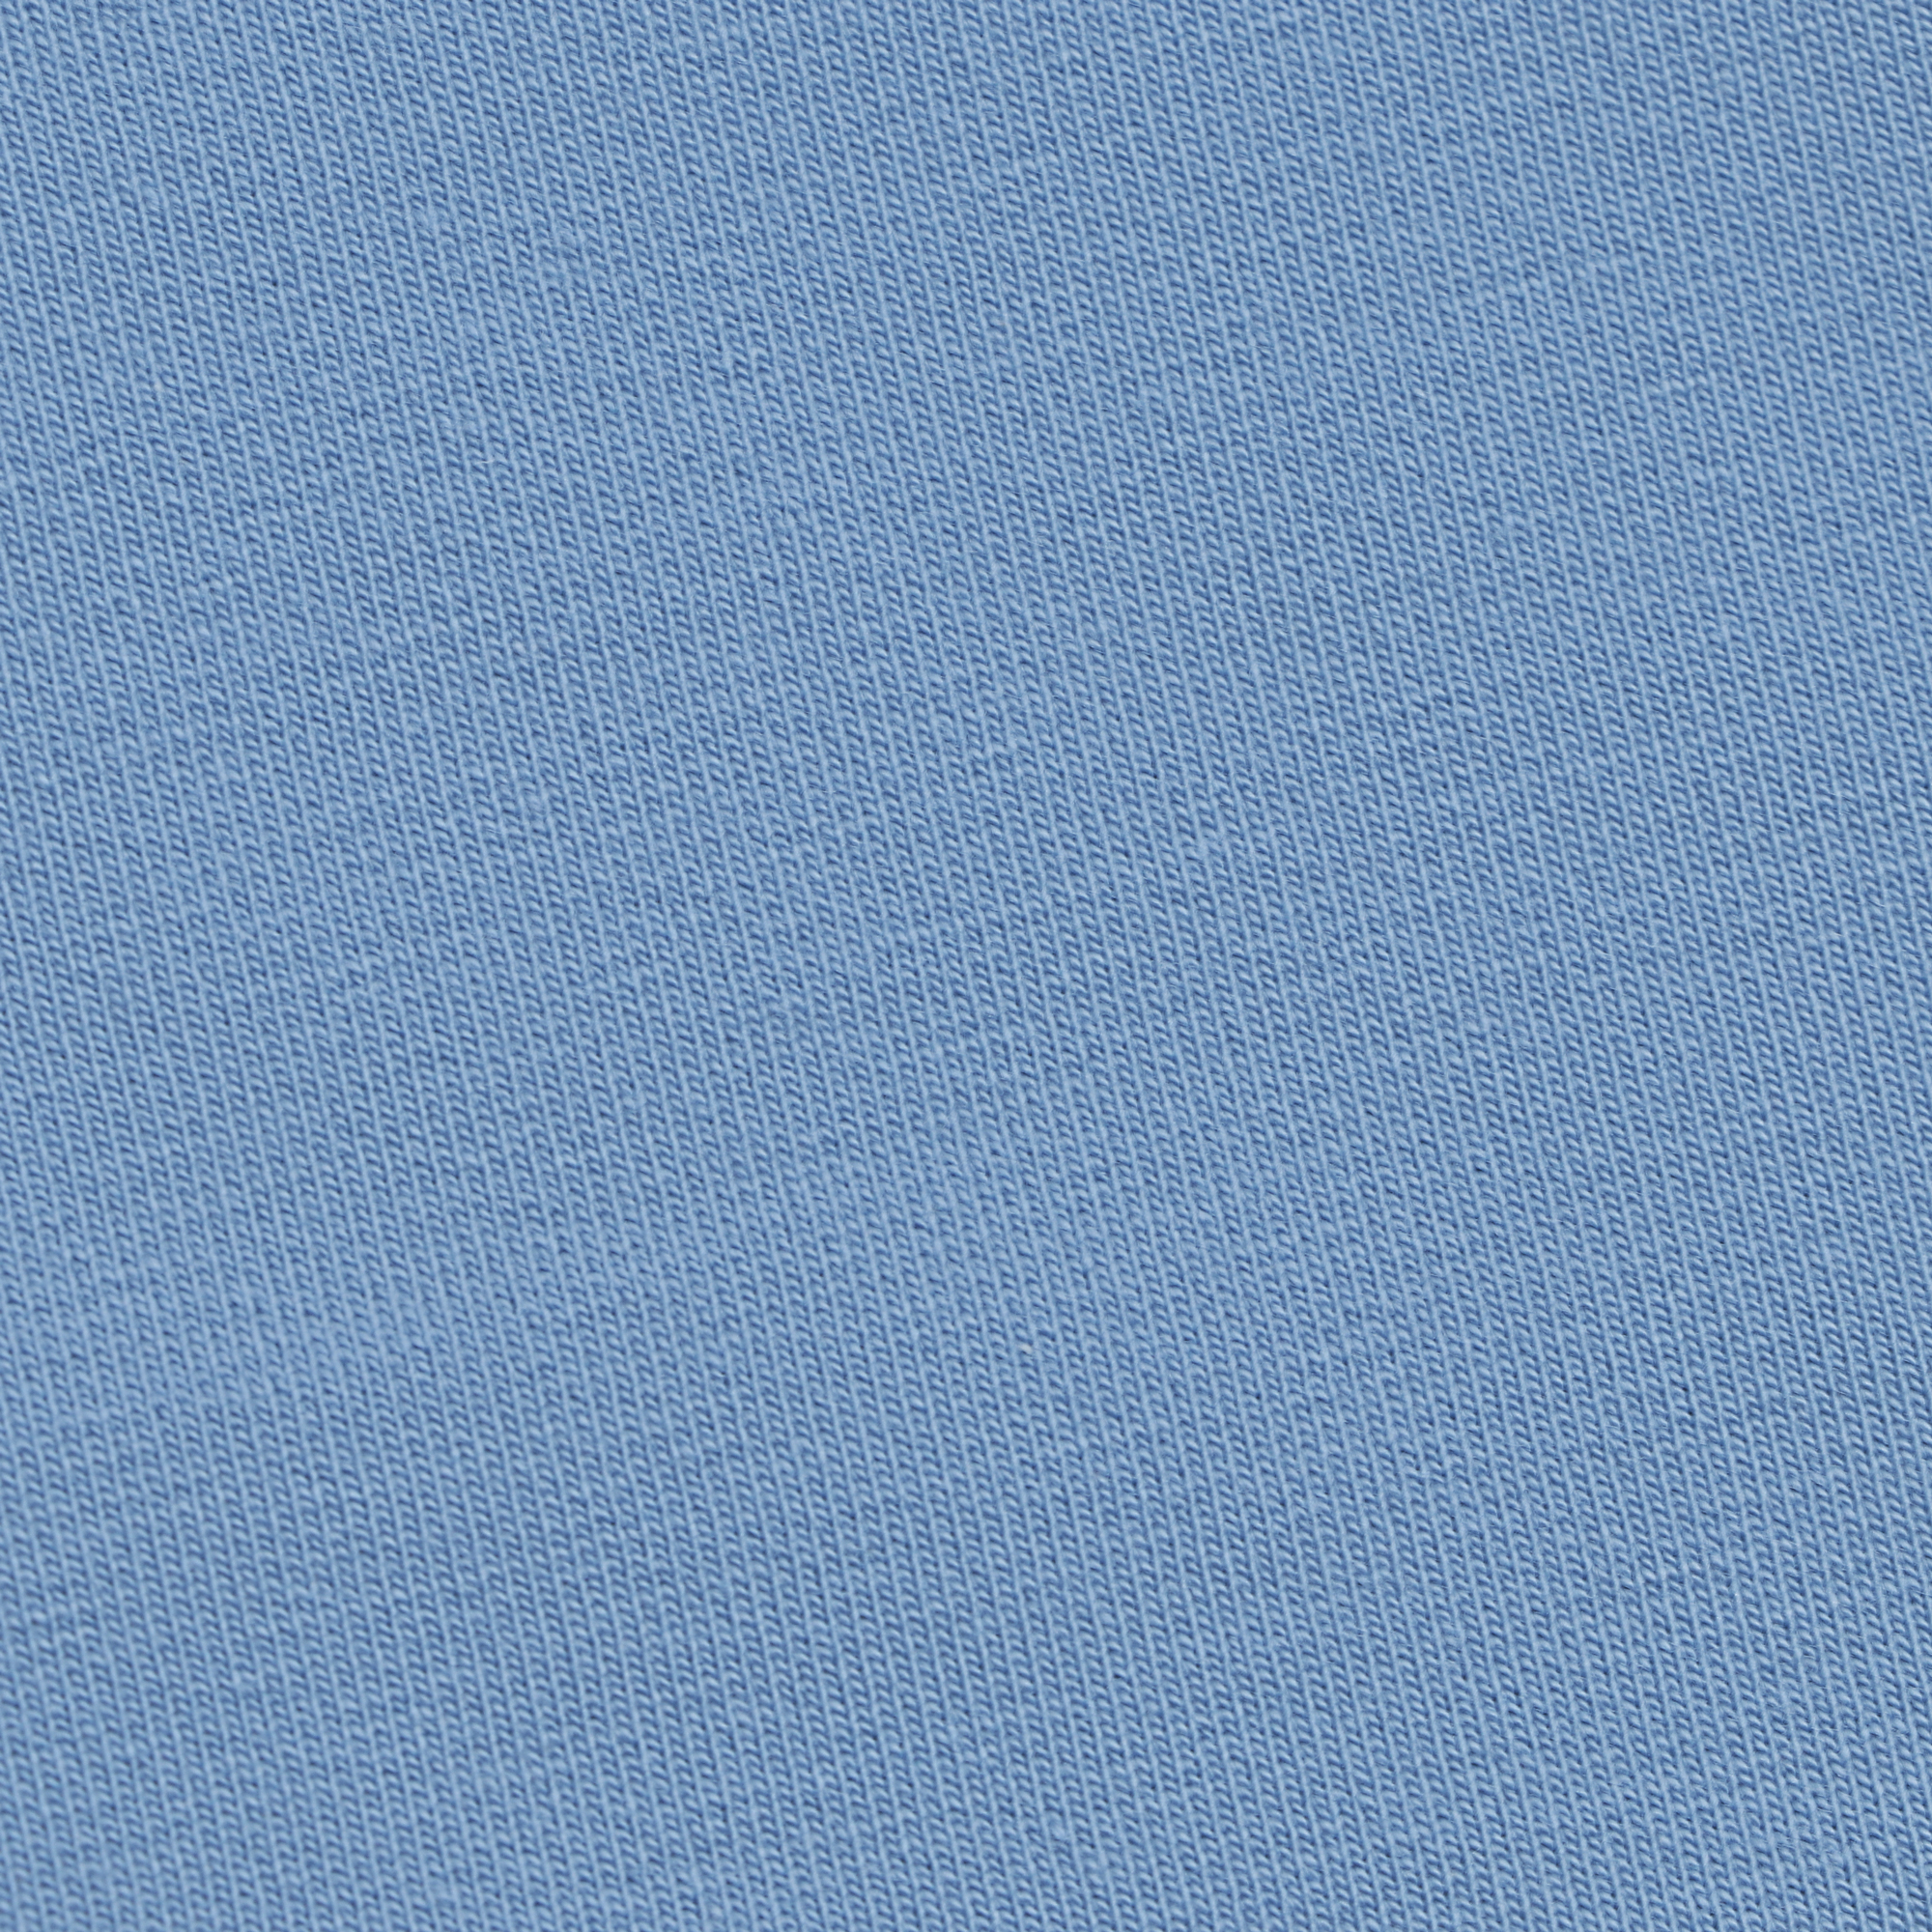 Мужские брюки Birlik голубые, цвет голубой, размер XL - фото 2